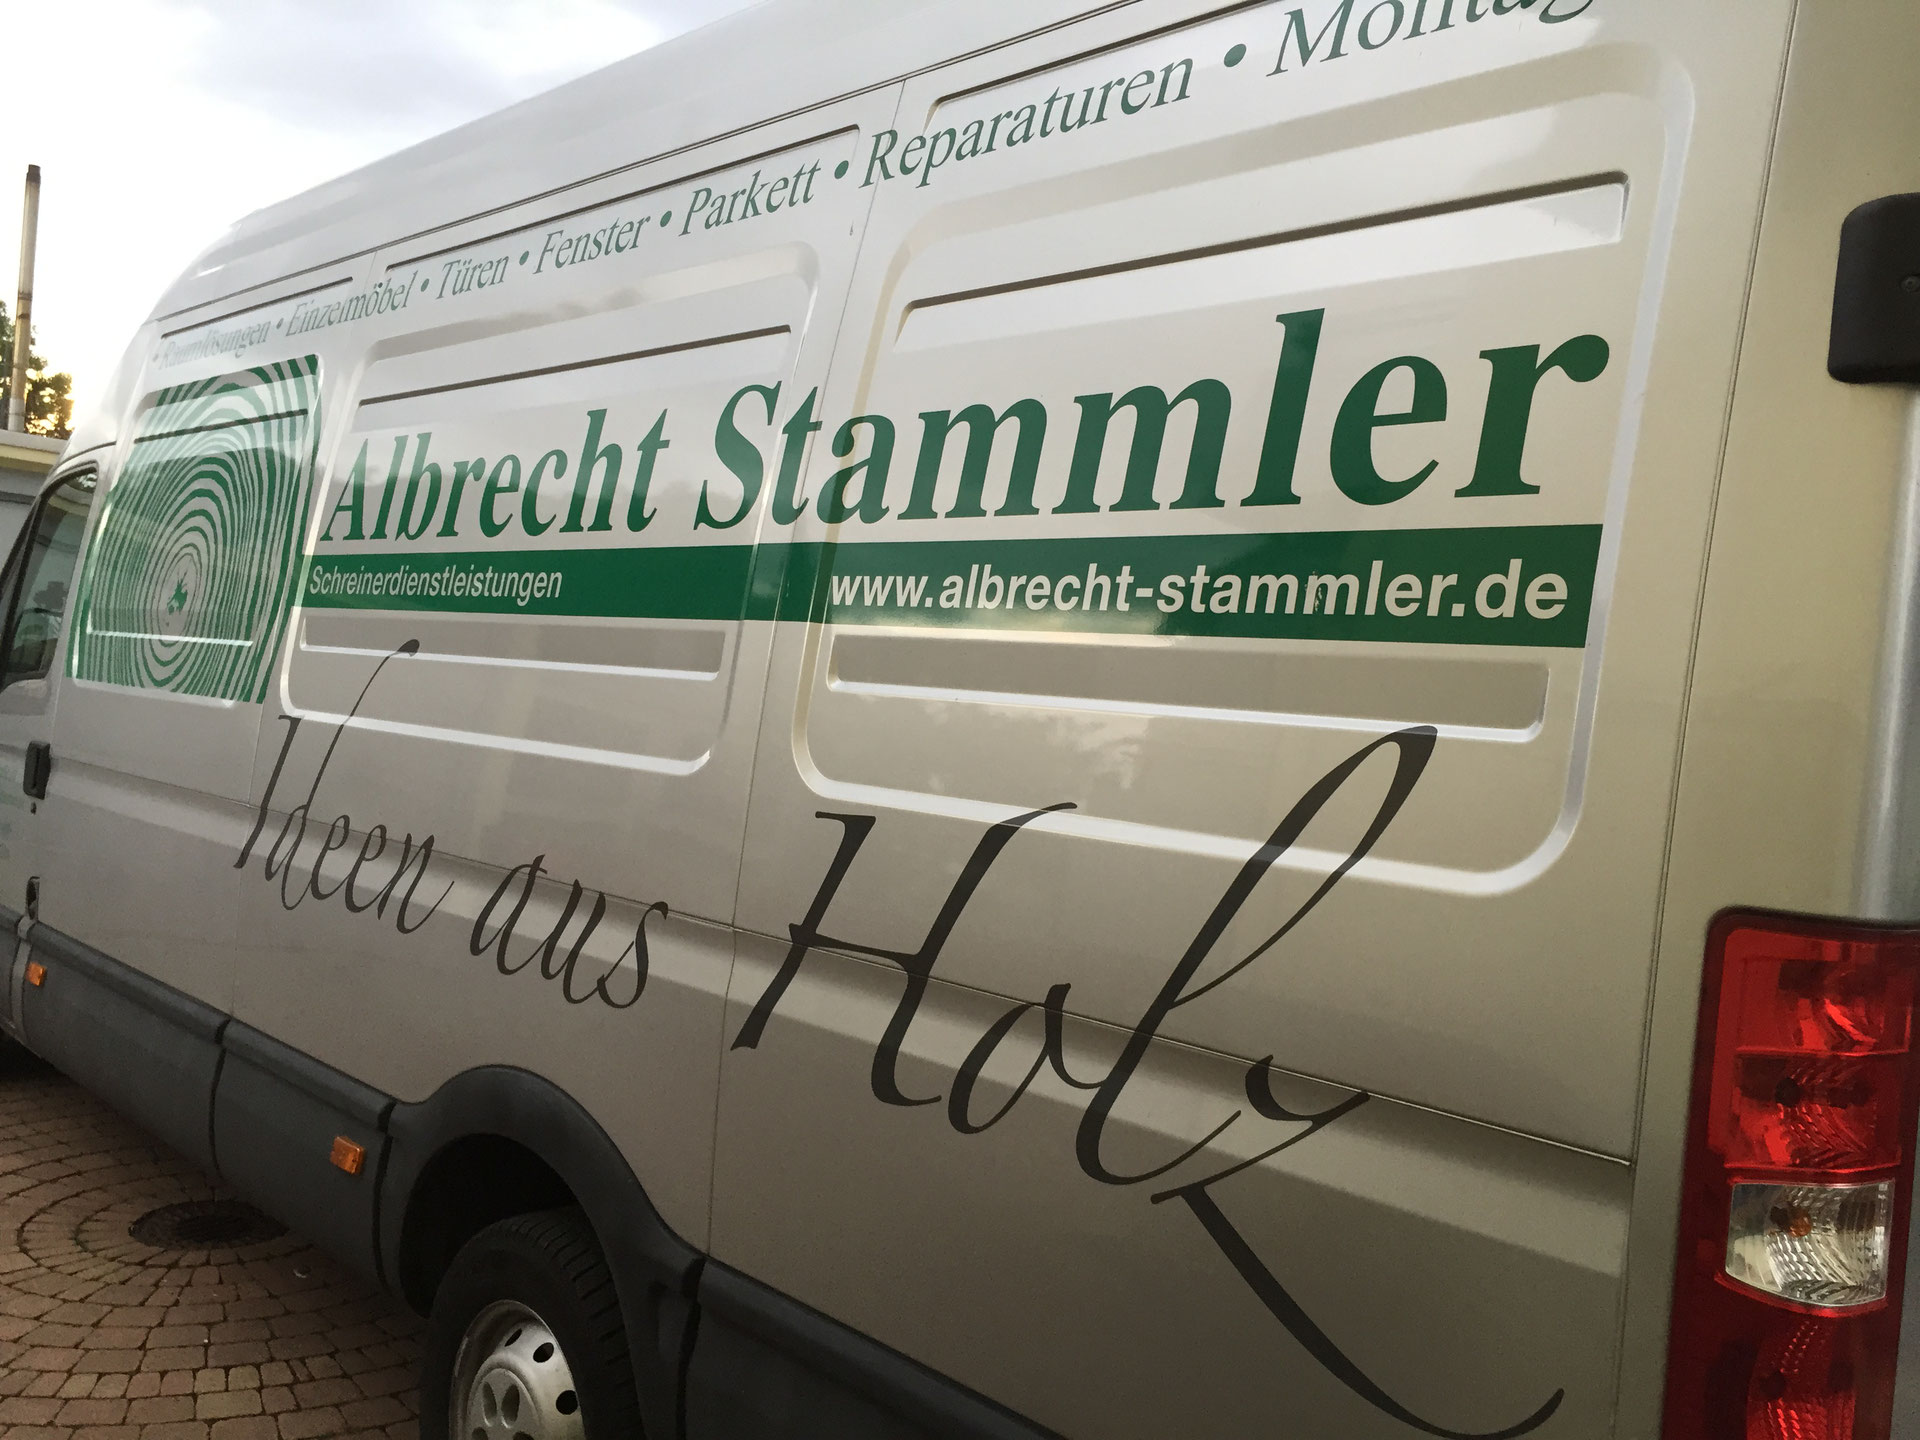 (c) Albrecht-stammler.de